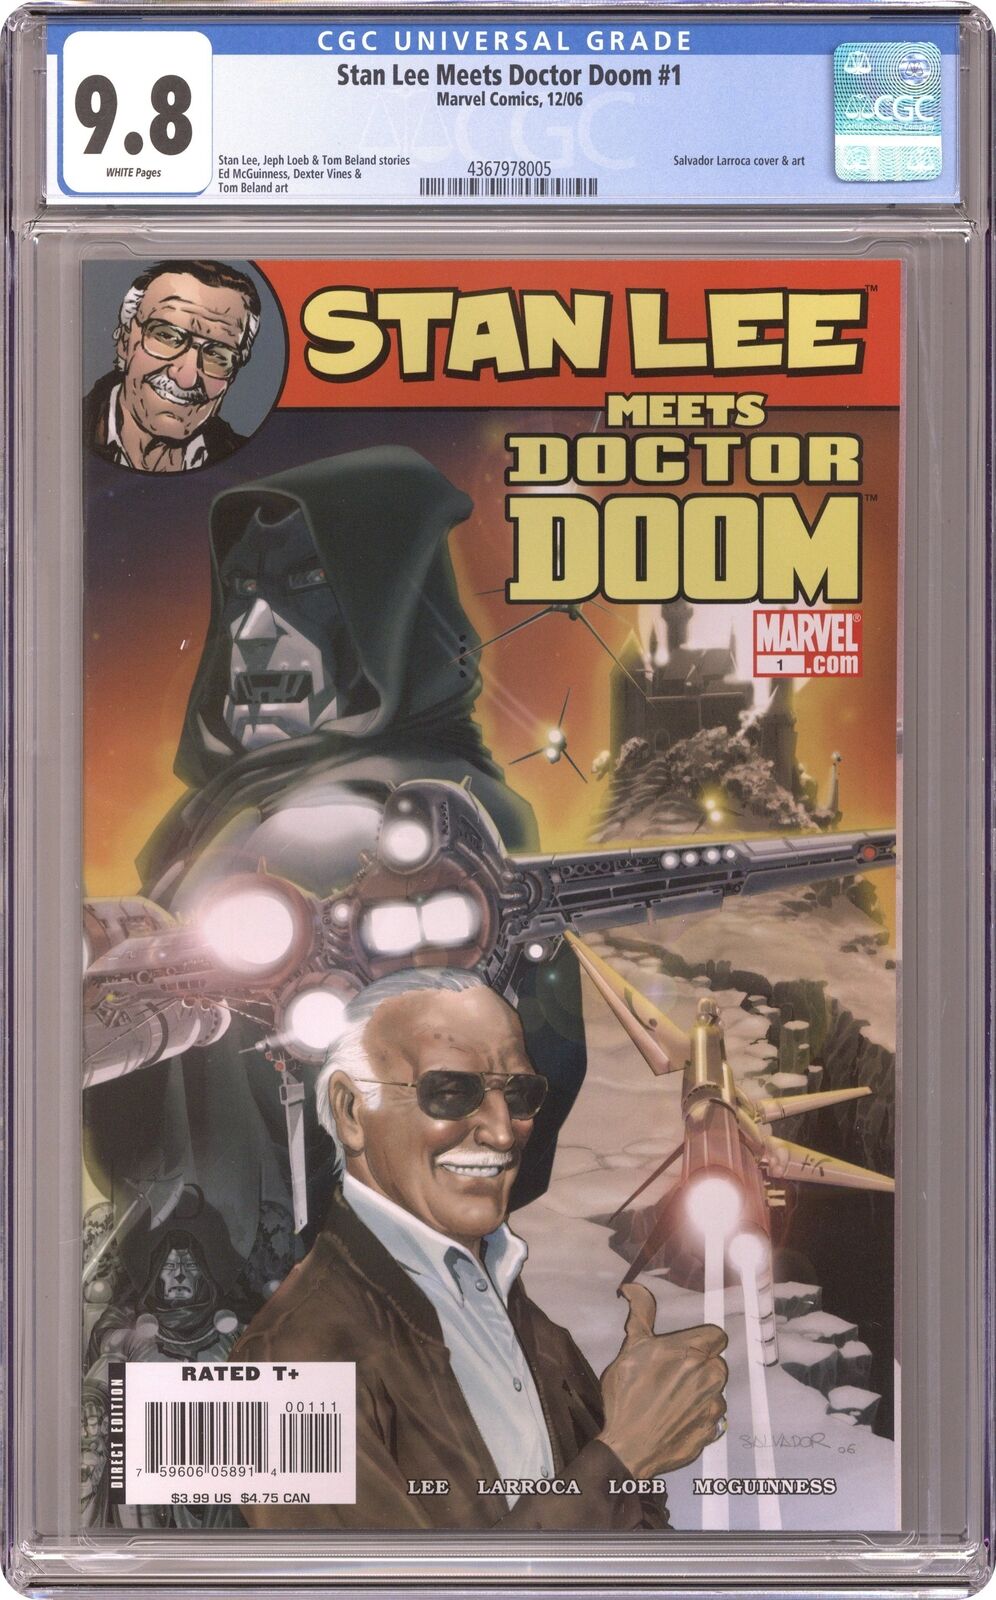 Stan Lee Meets Dr. Doom #1 CGC 9.8 2006 4367978005